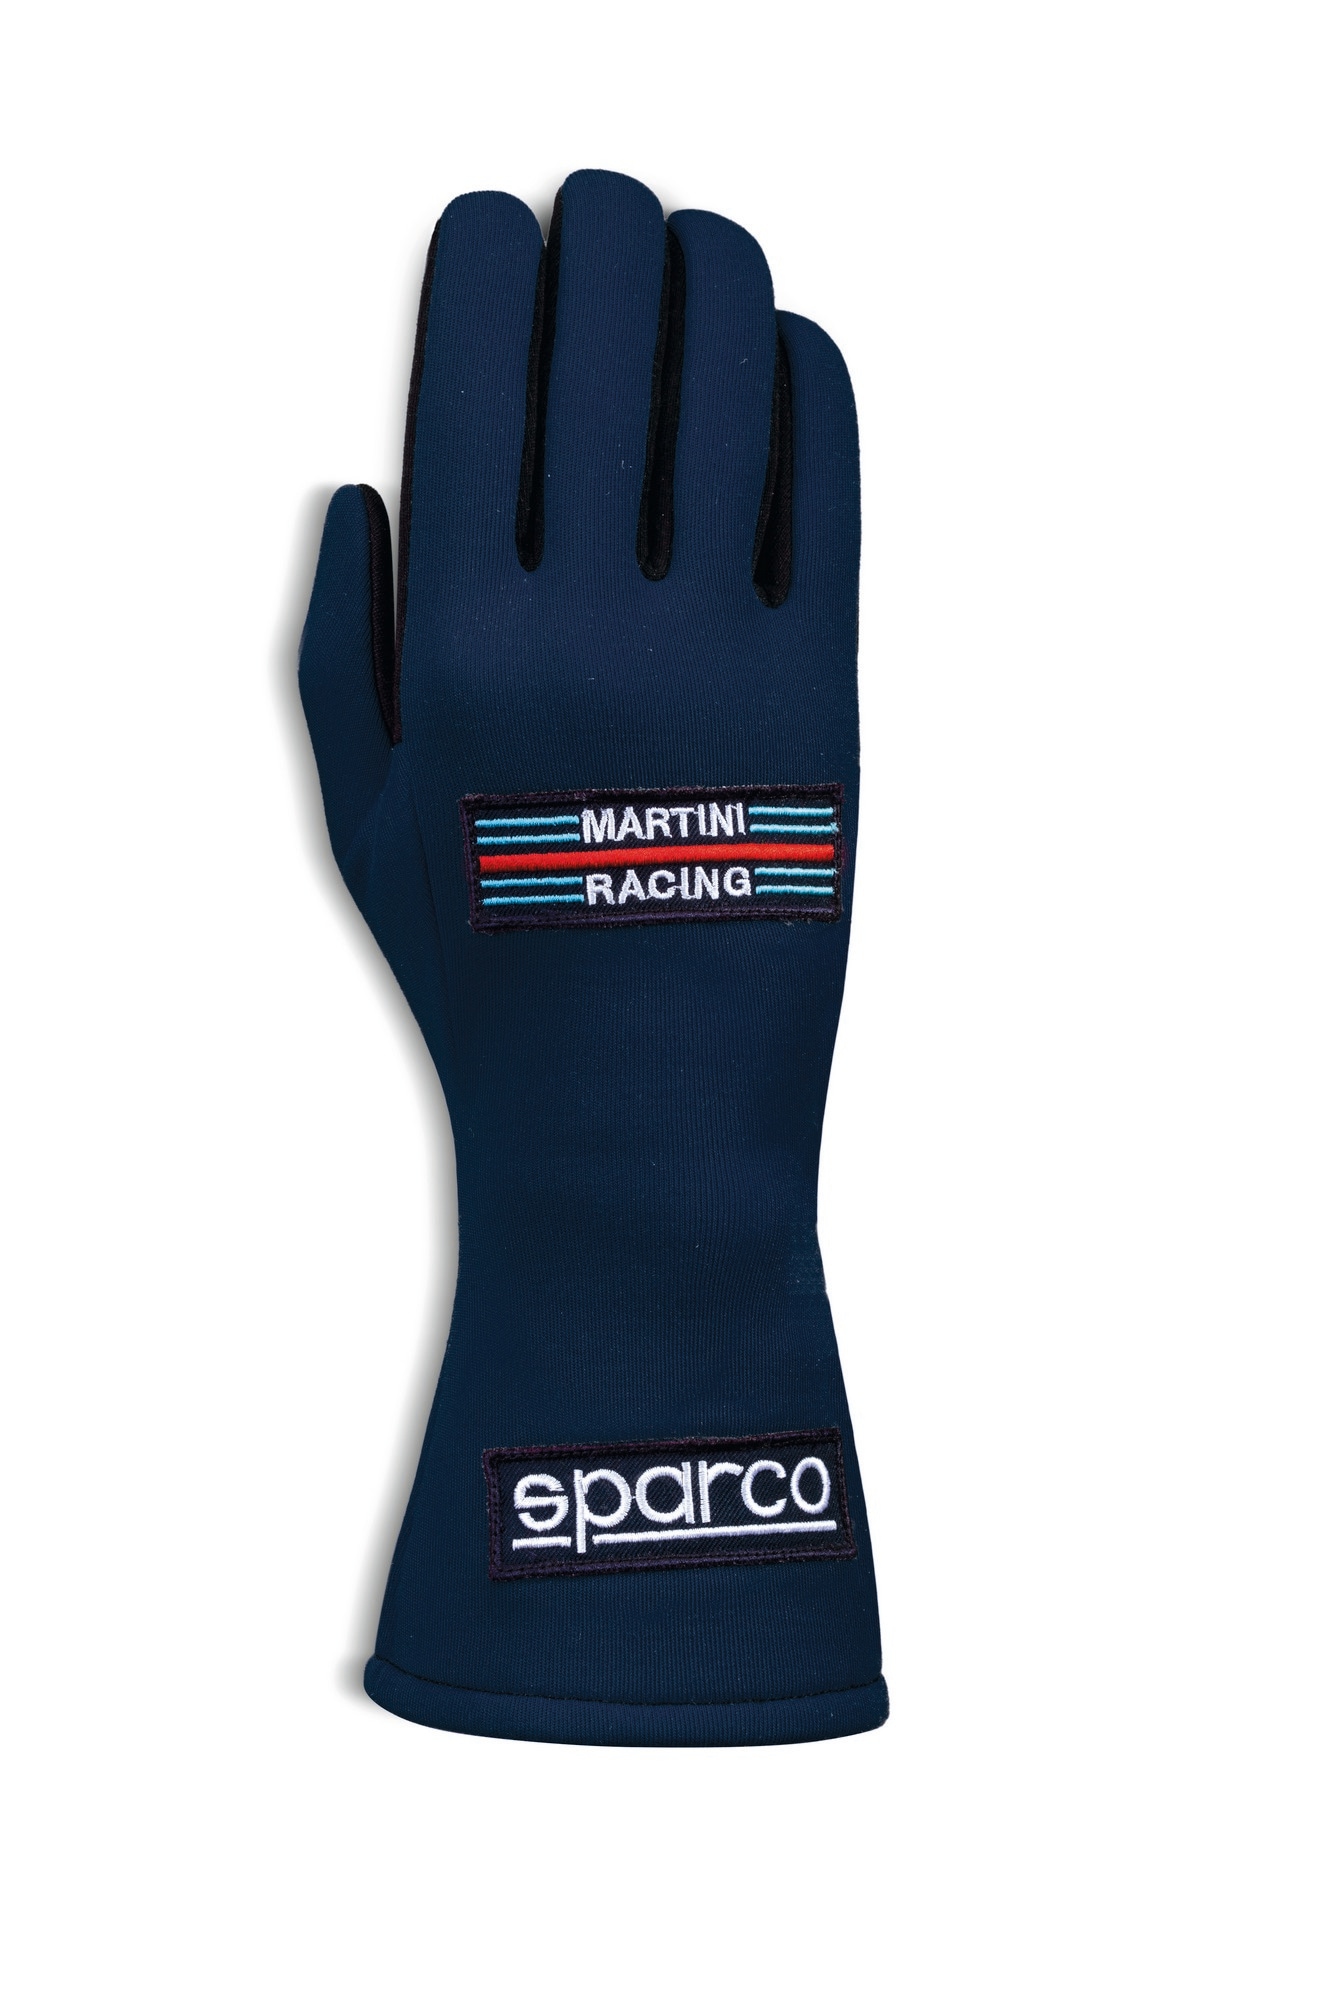 Handsker Sparco Land Martini Racing Blå